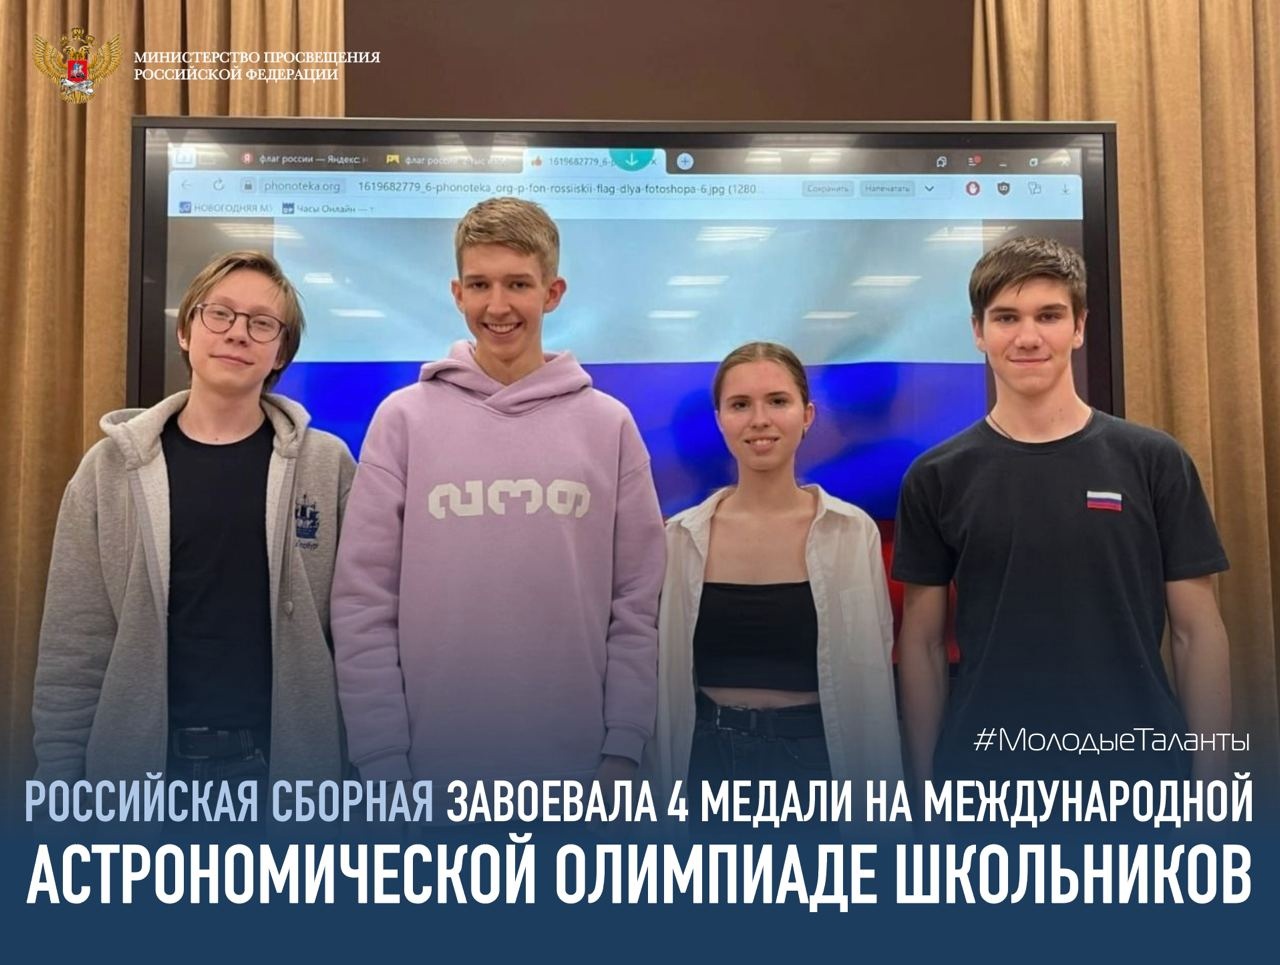 Российская сборная завоевала 4 медали на международной астрономической олимпиаде школьников